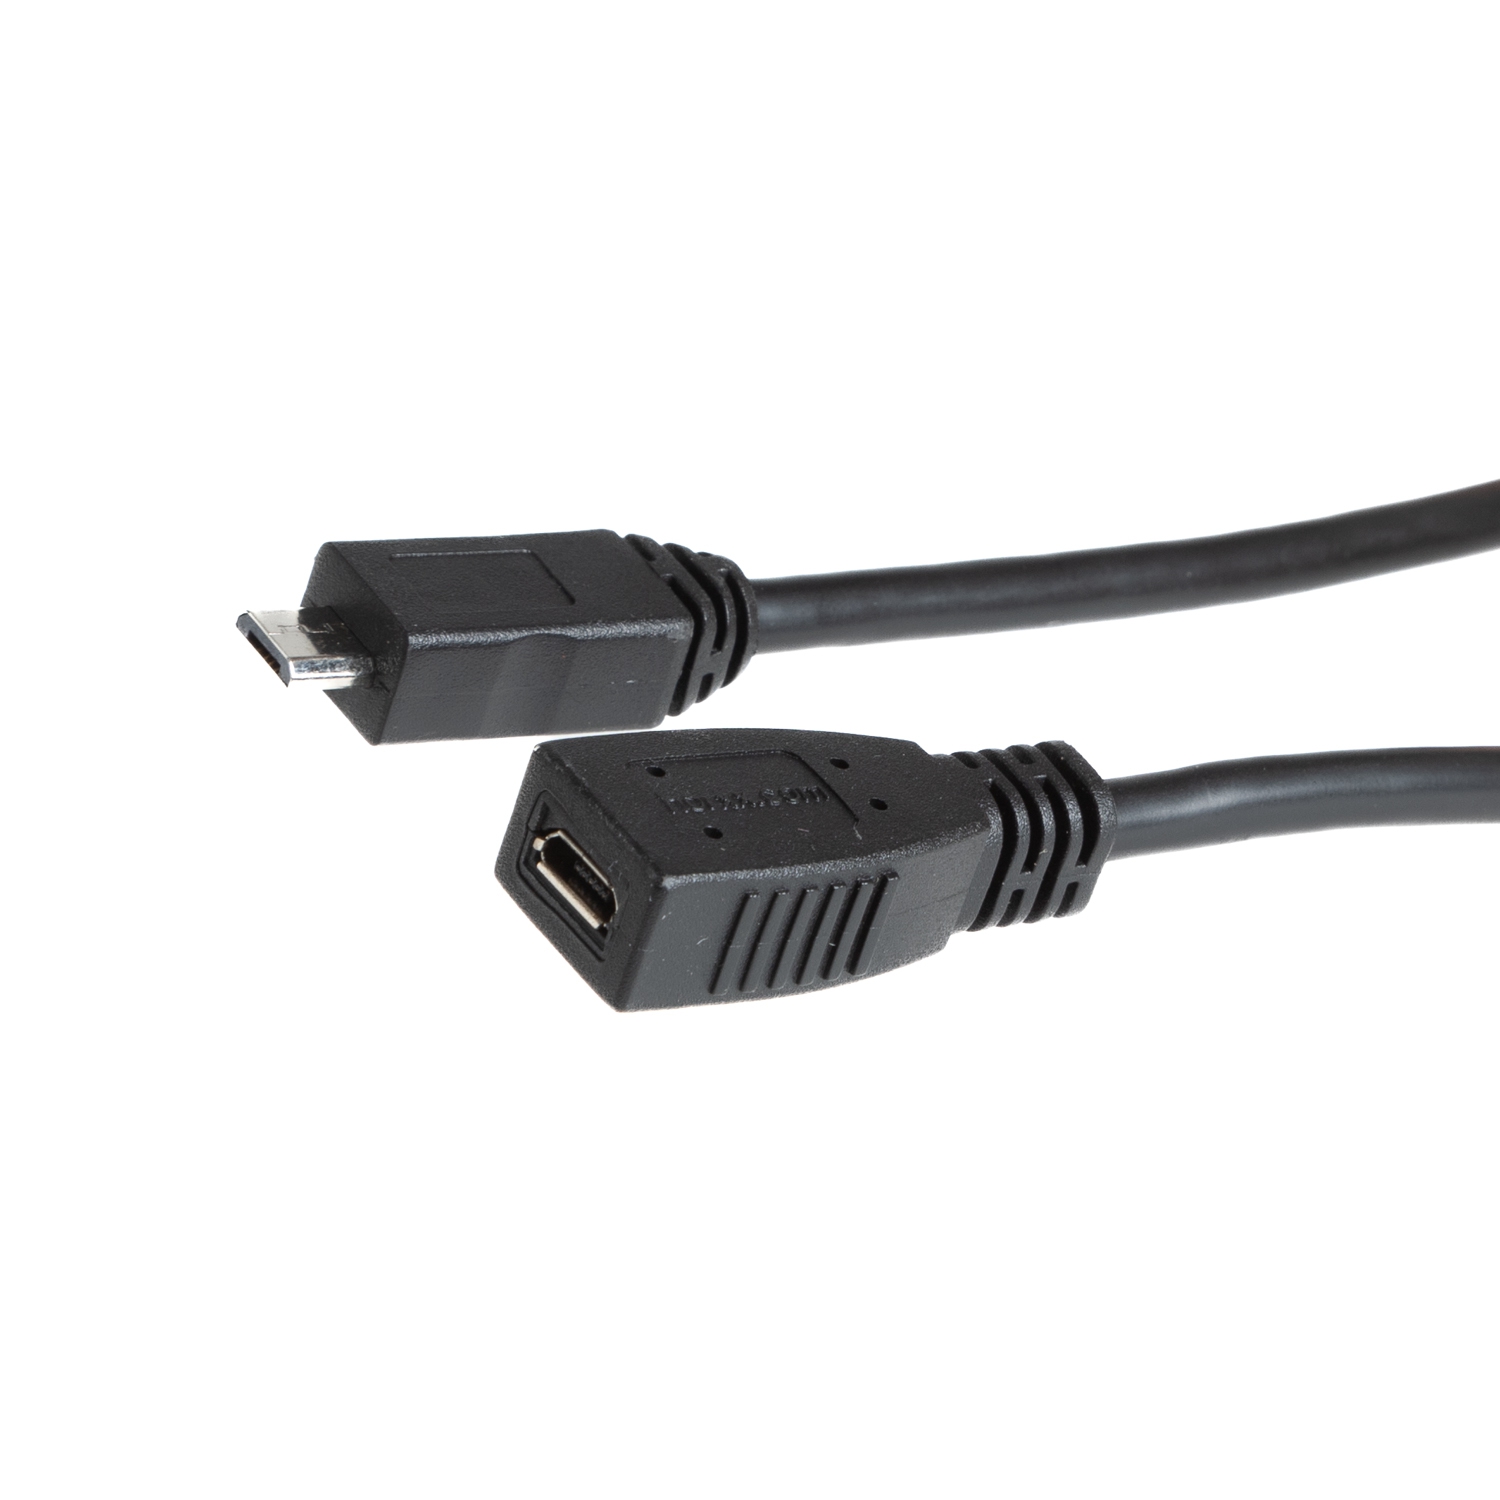 USB 2.0 MICRO B Verlängerung, alle 5 Pins 1-zu-1 verbunden, 30cm